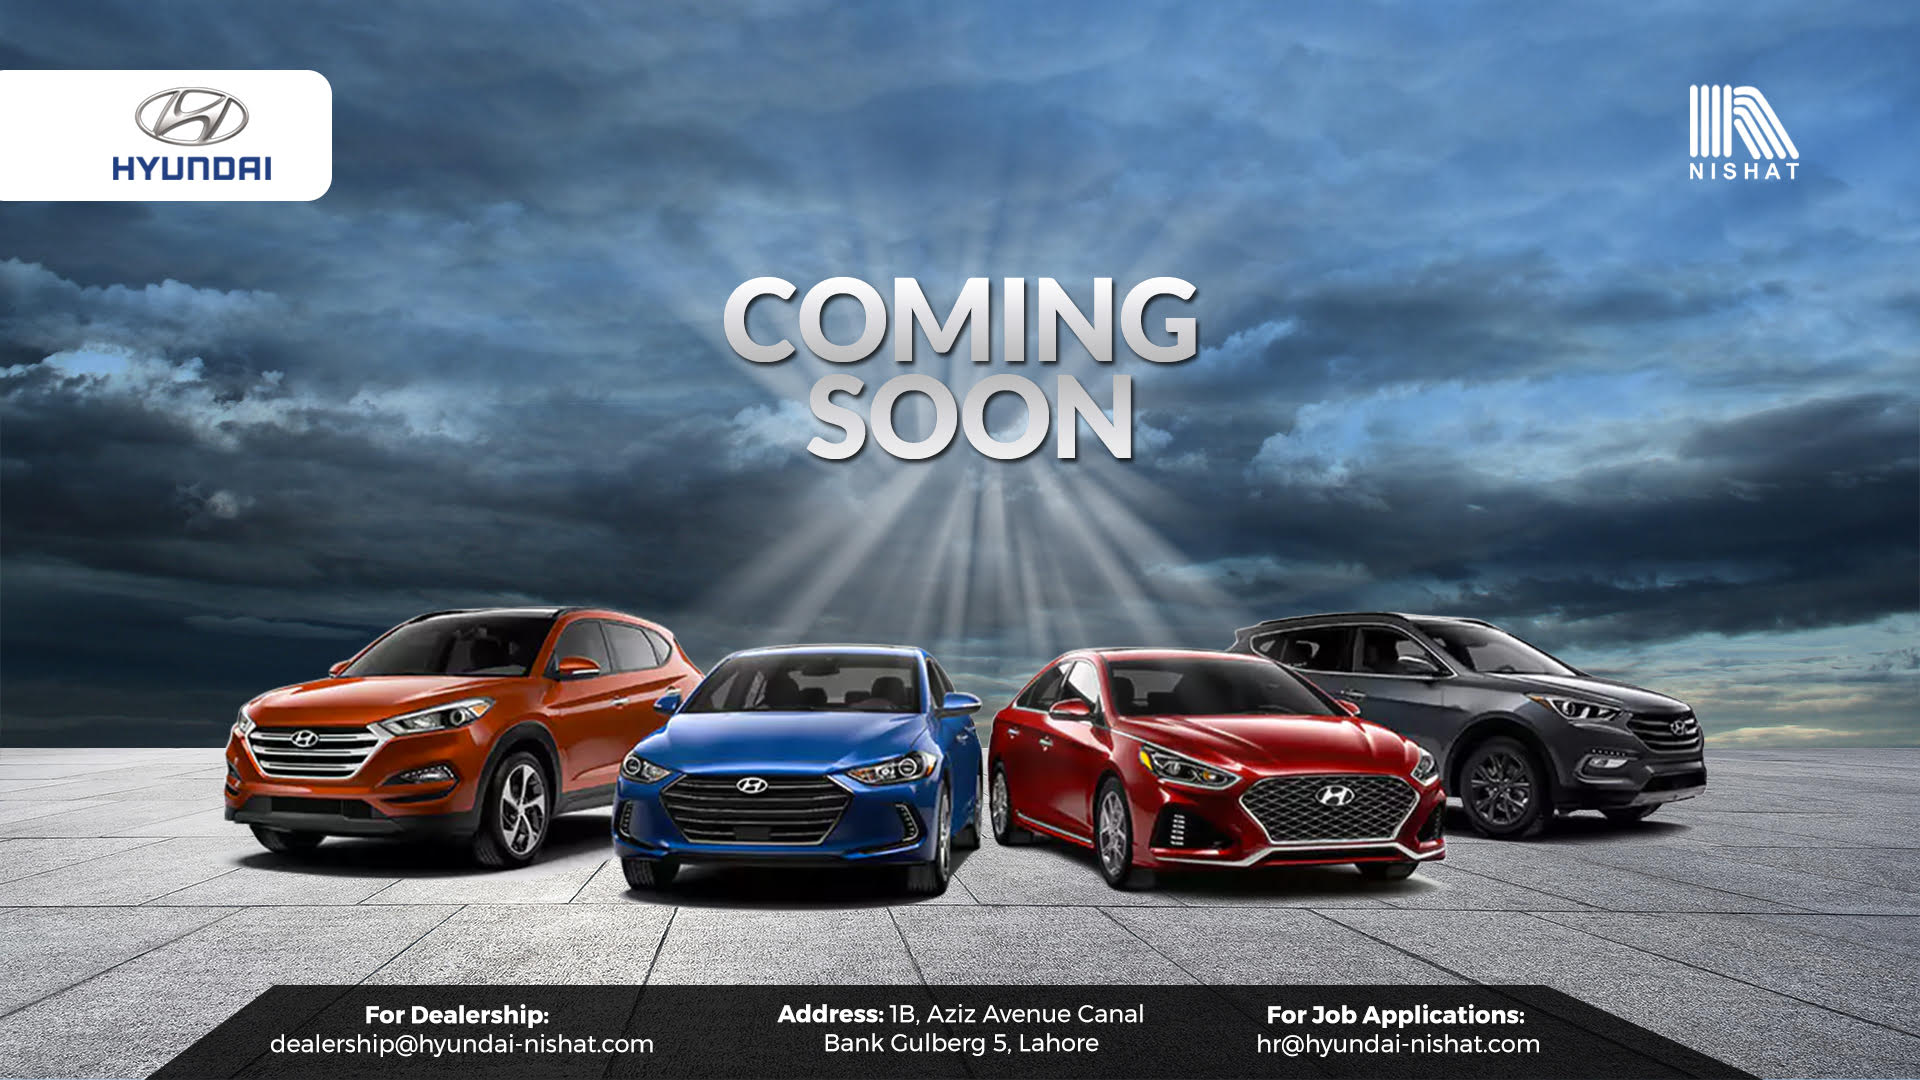 Hyundai-Nishat Website Hints a Range of Upcoming Vehicles 2